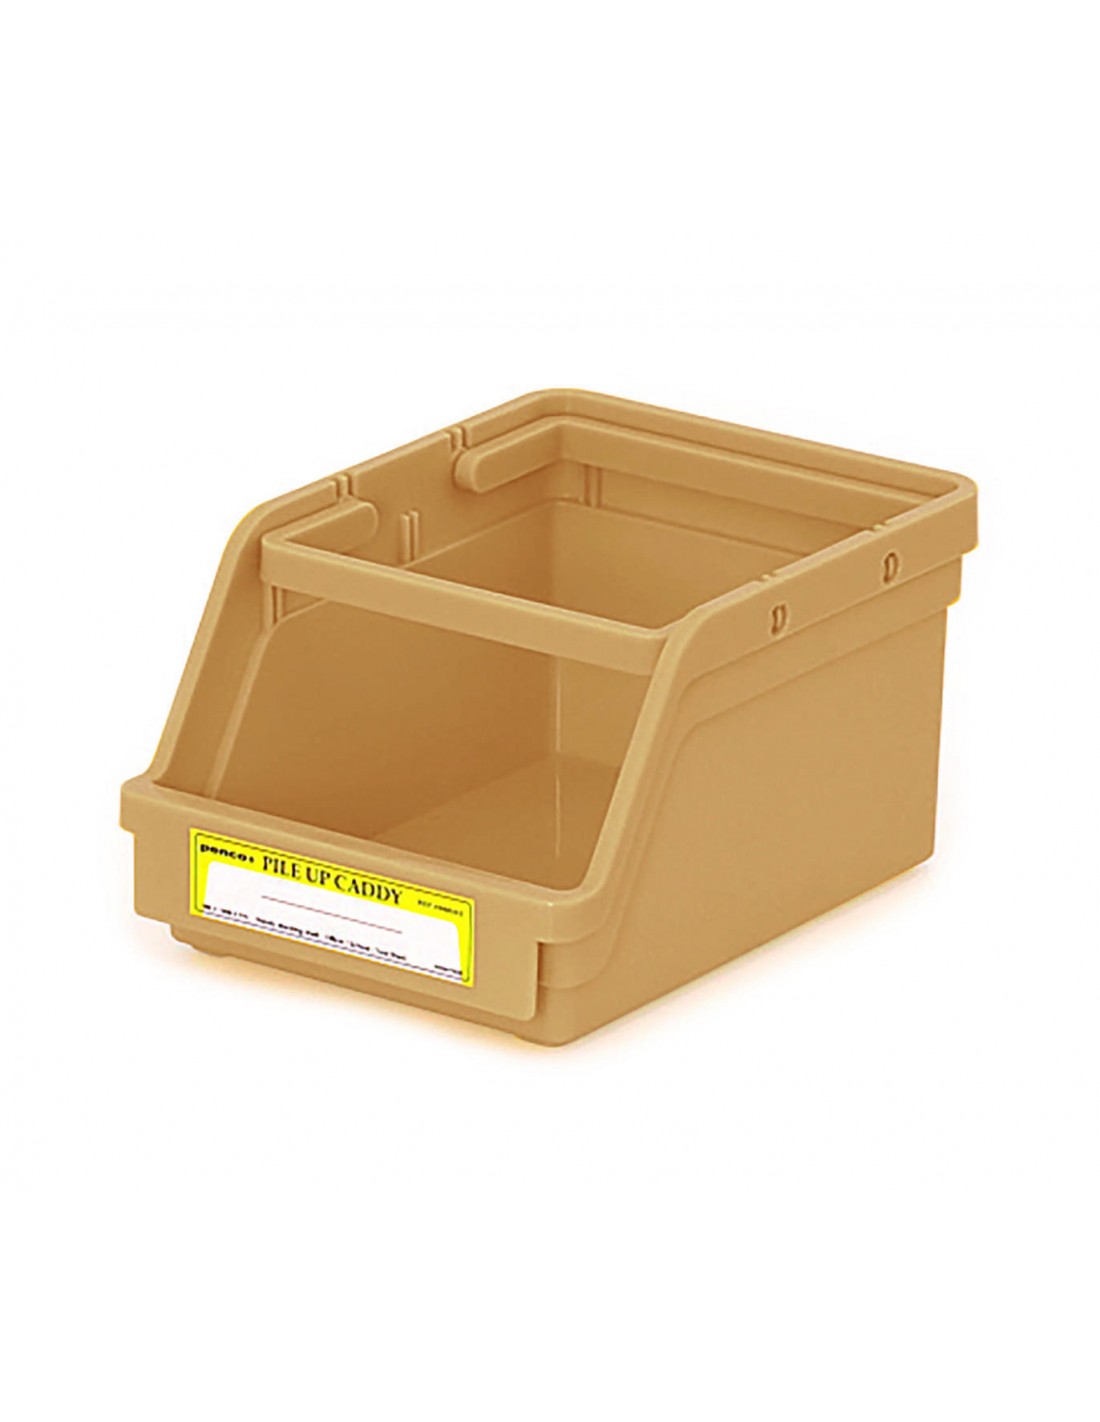 Caja con Compartimentos de Plástico Grande, 16 Aberturas - Durham